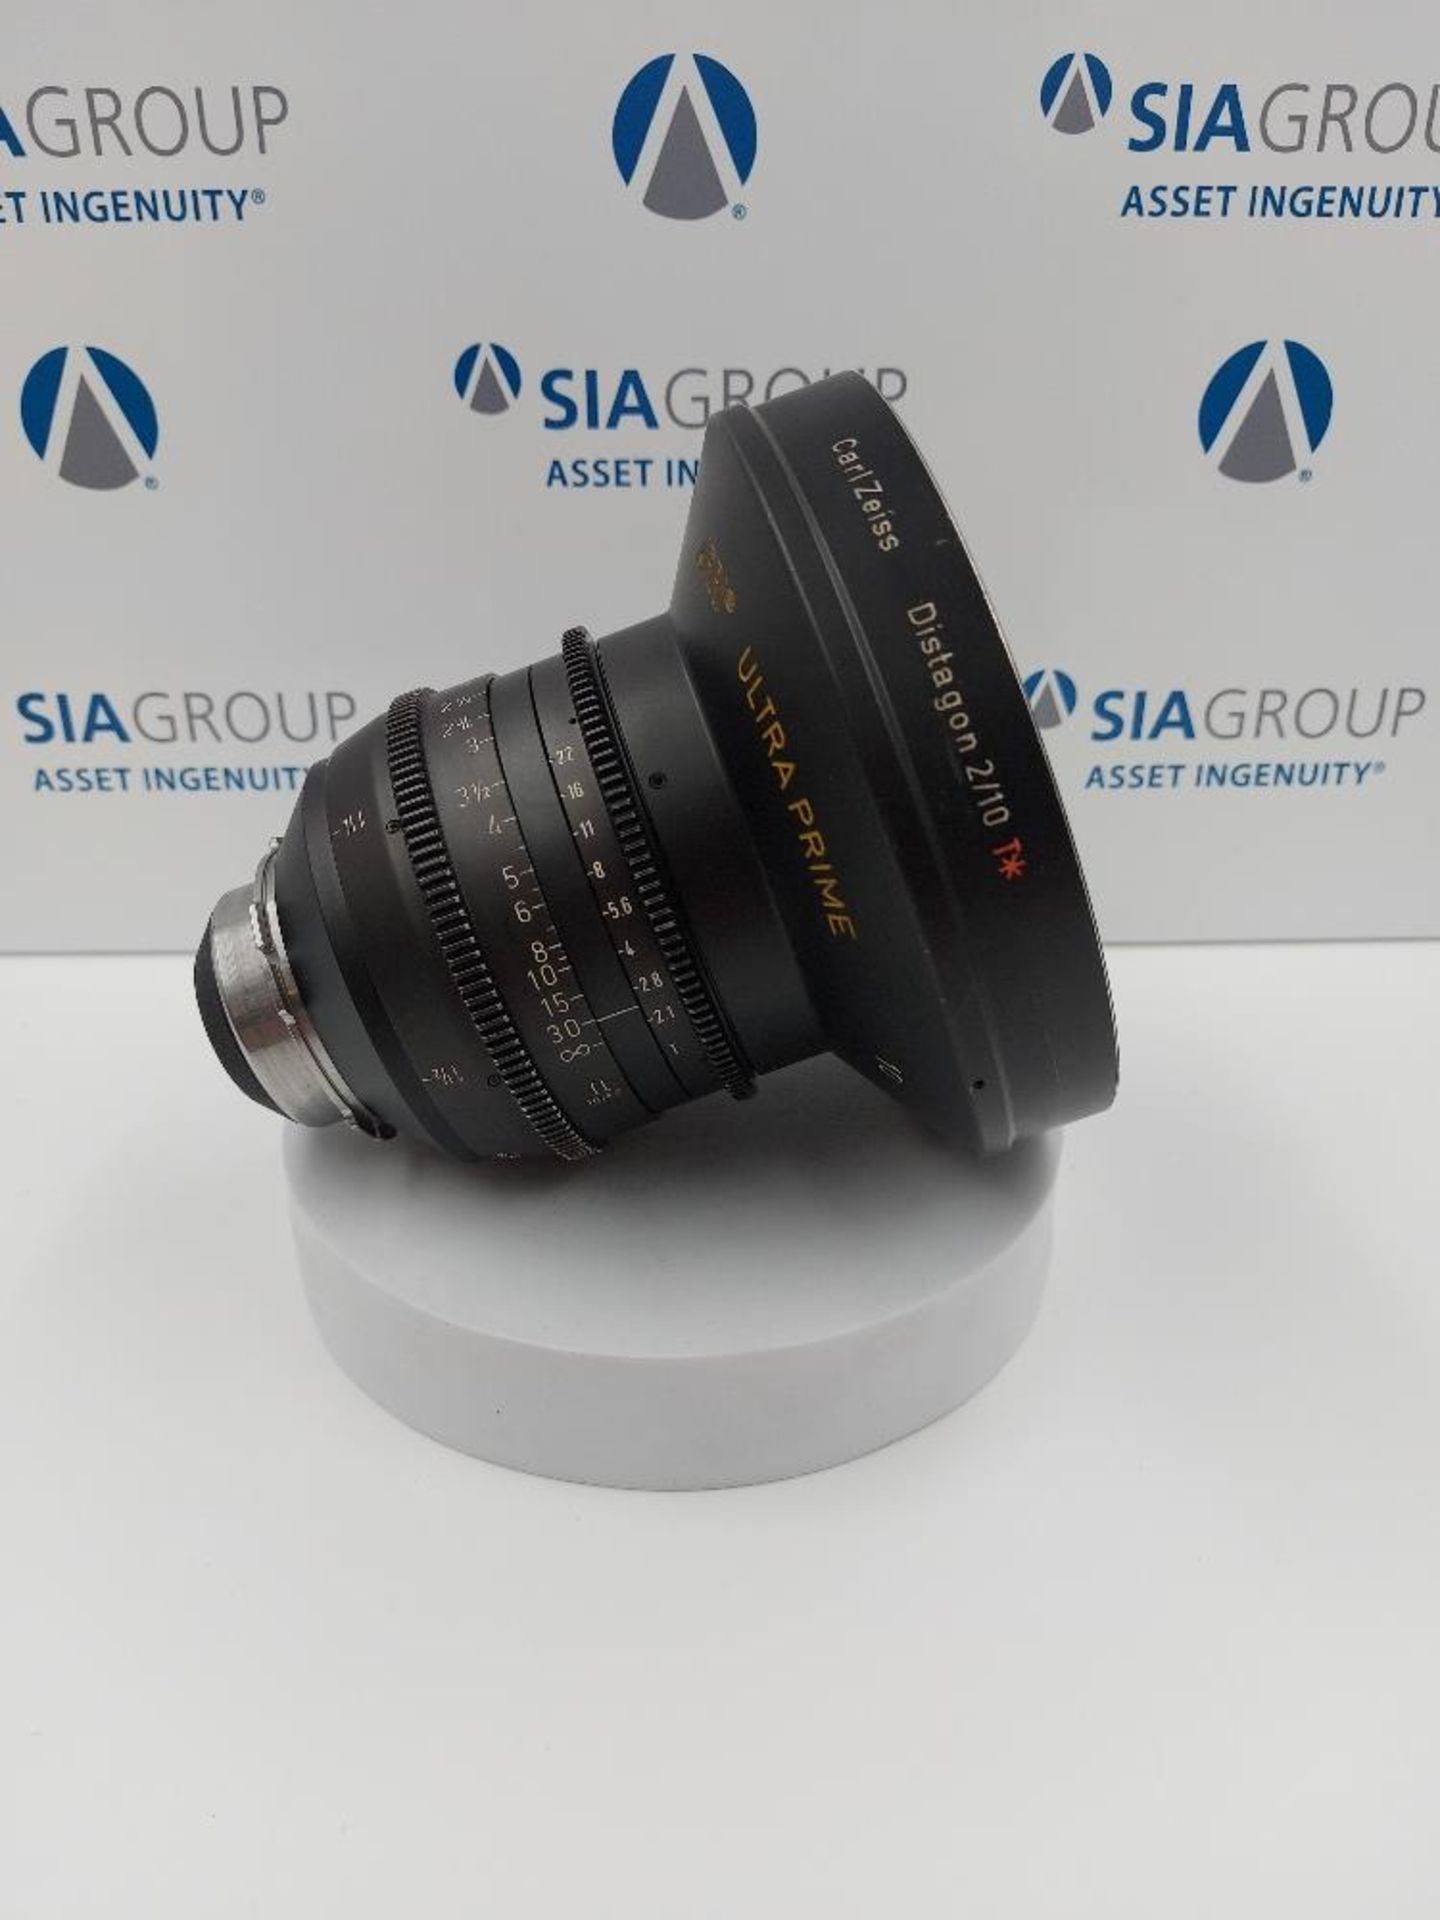 ARRI 10mm T2.1 S35 Ultra Prime PL Mount Lens - Image 3 of 7